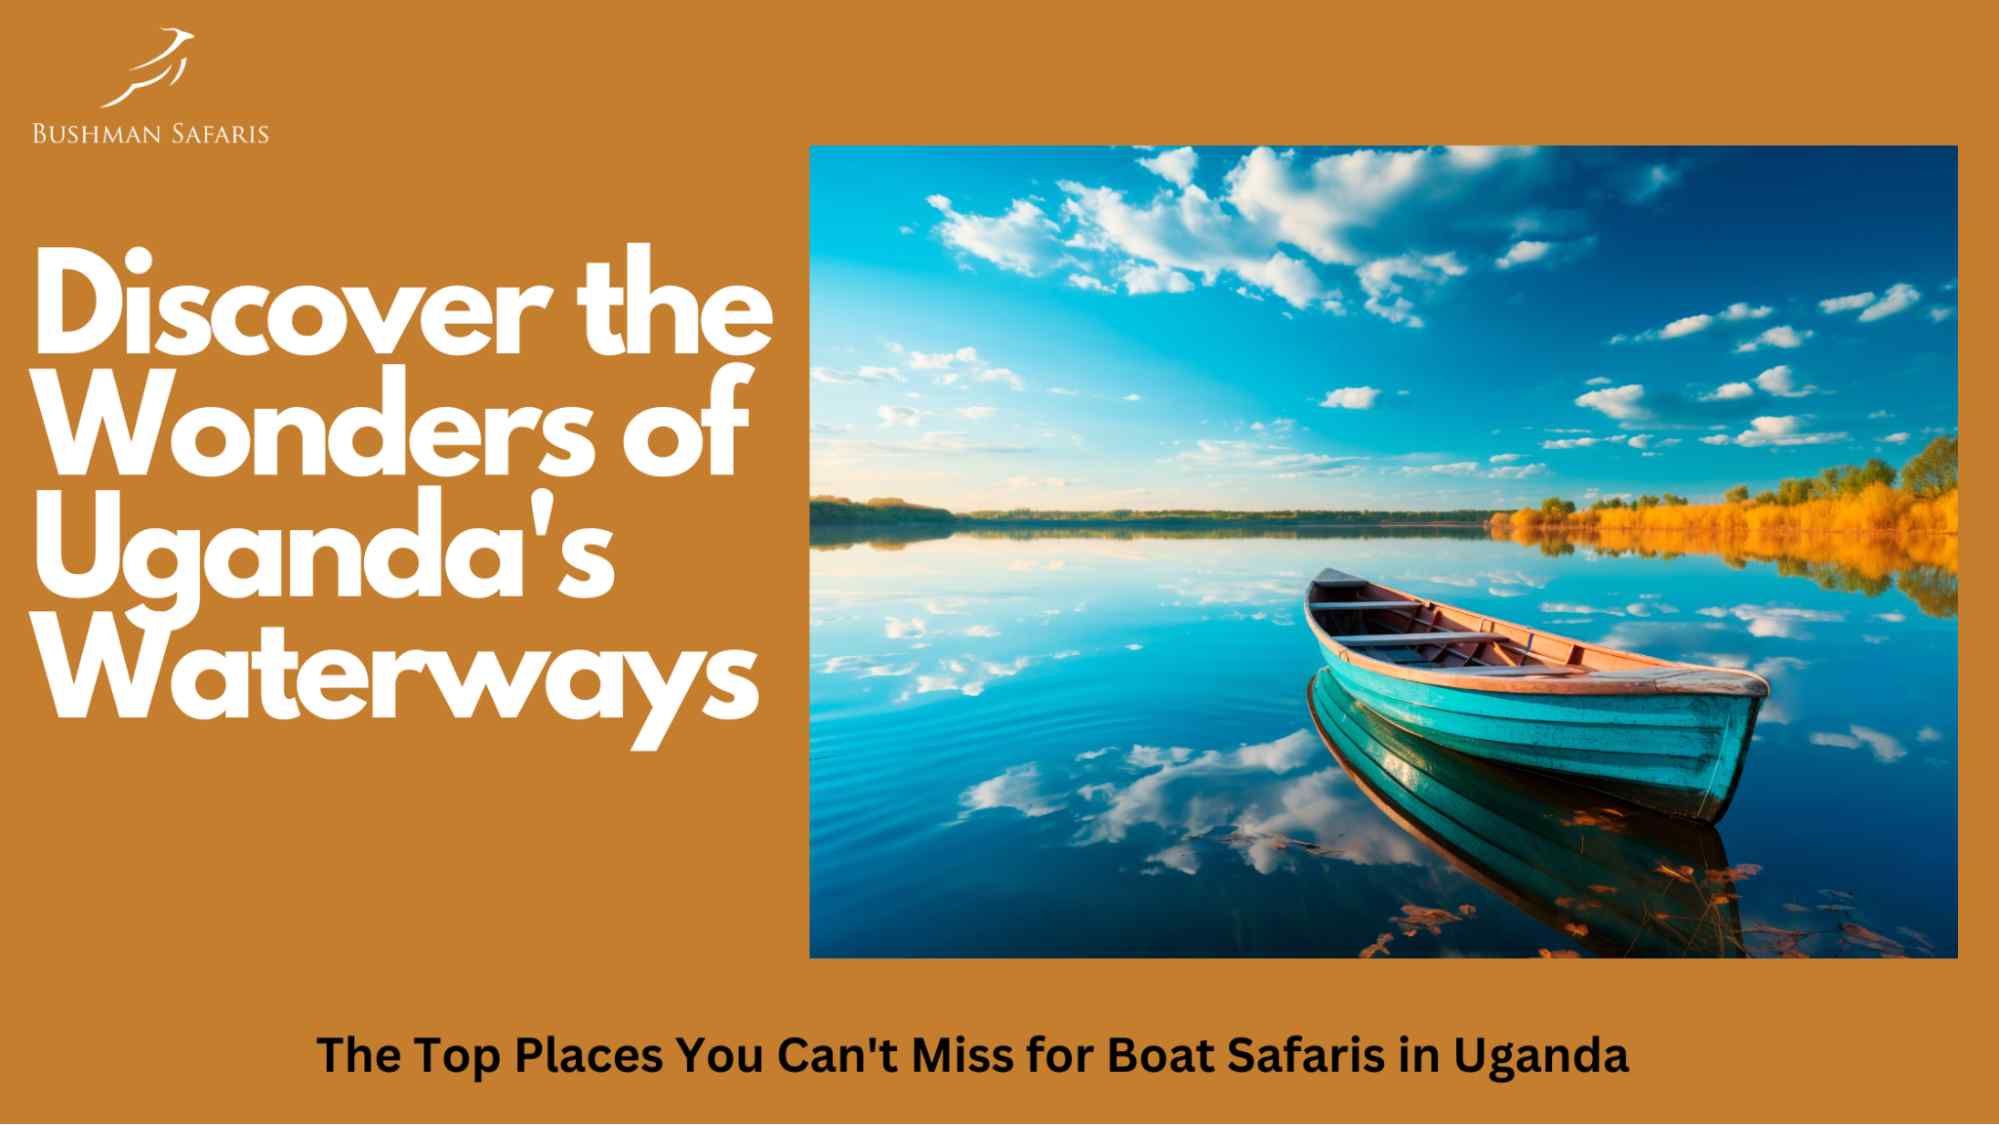 Boat Safaris in Uganda